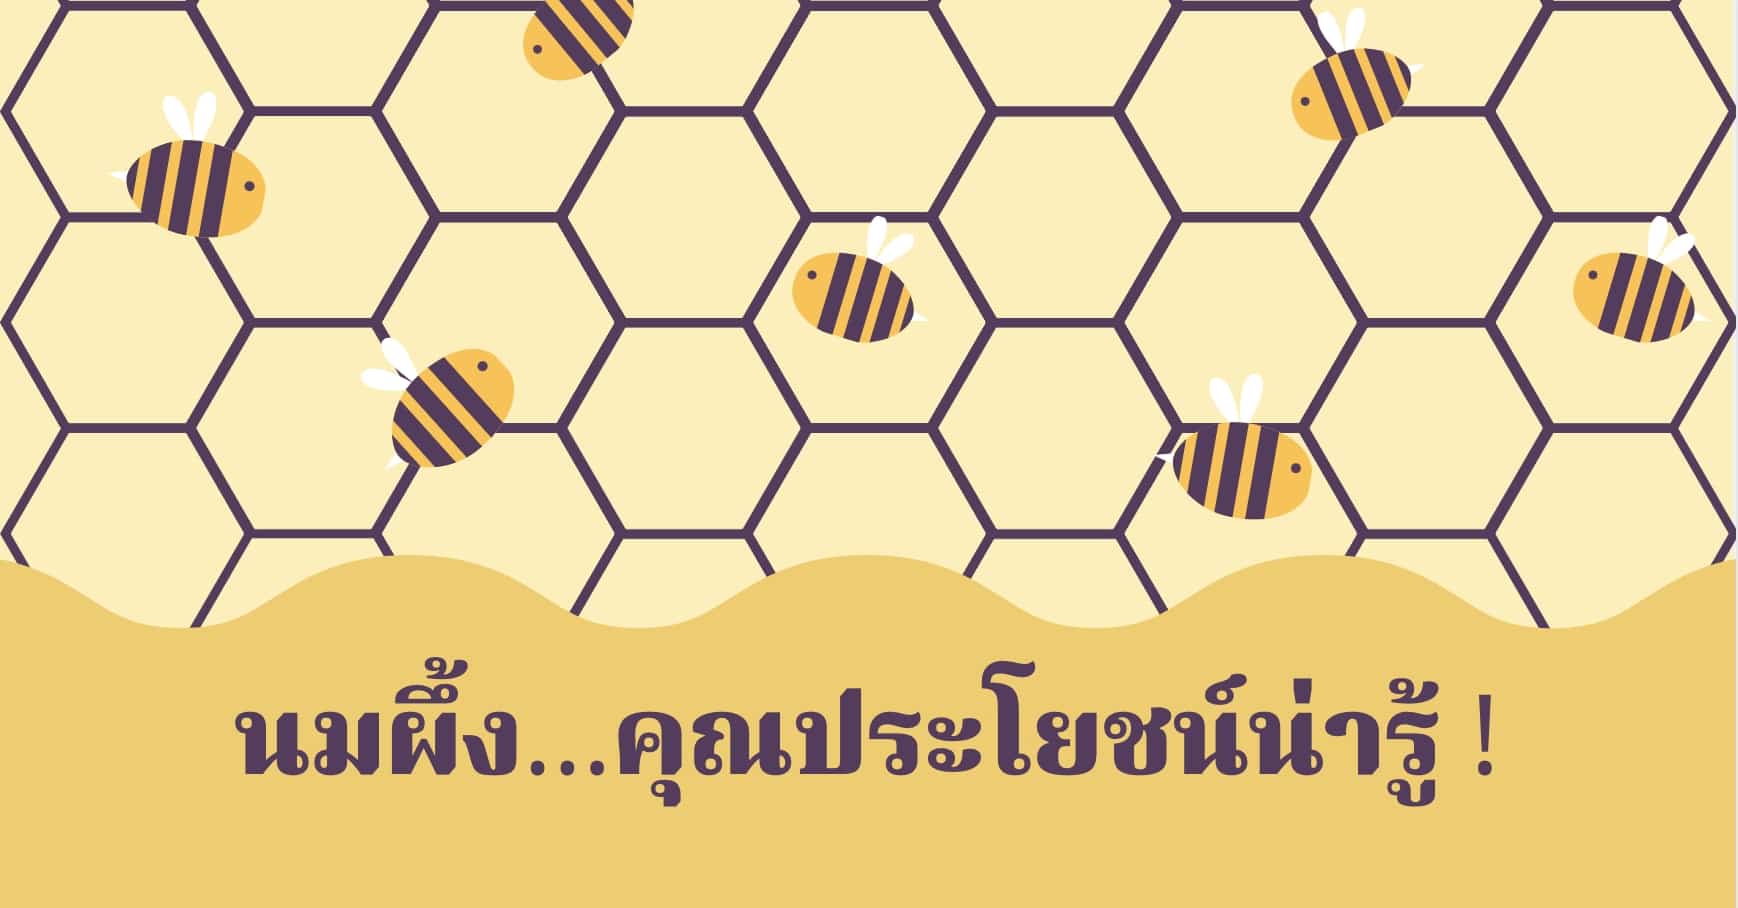 นมผึ้ง (Royal Jelly) สรรพคุณและประโยชน์ของนมผึ้ง 28 ข้อ !